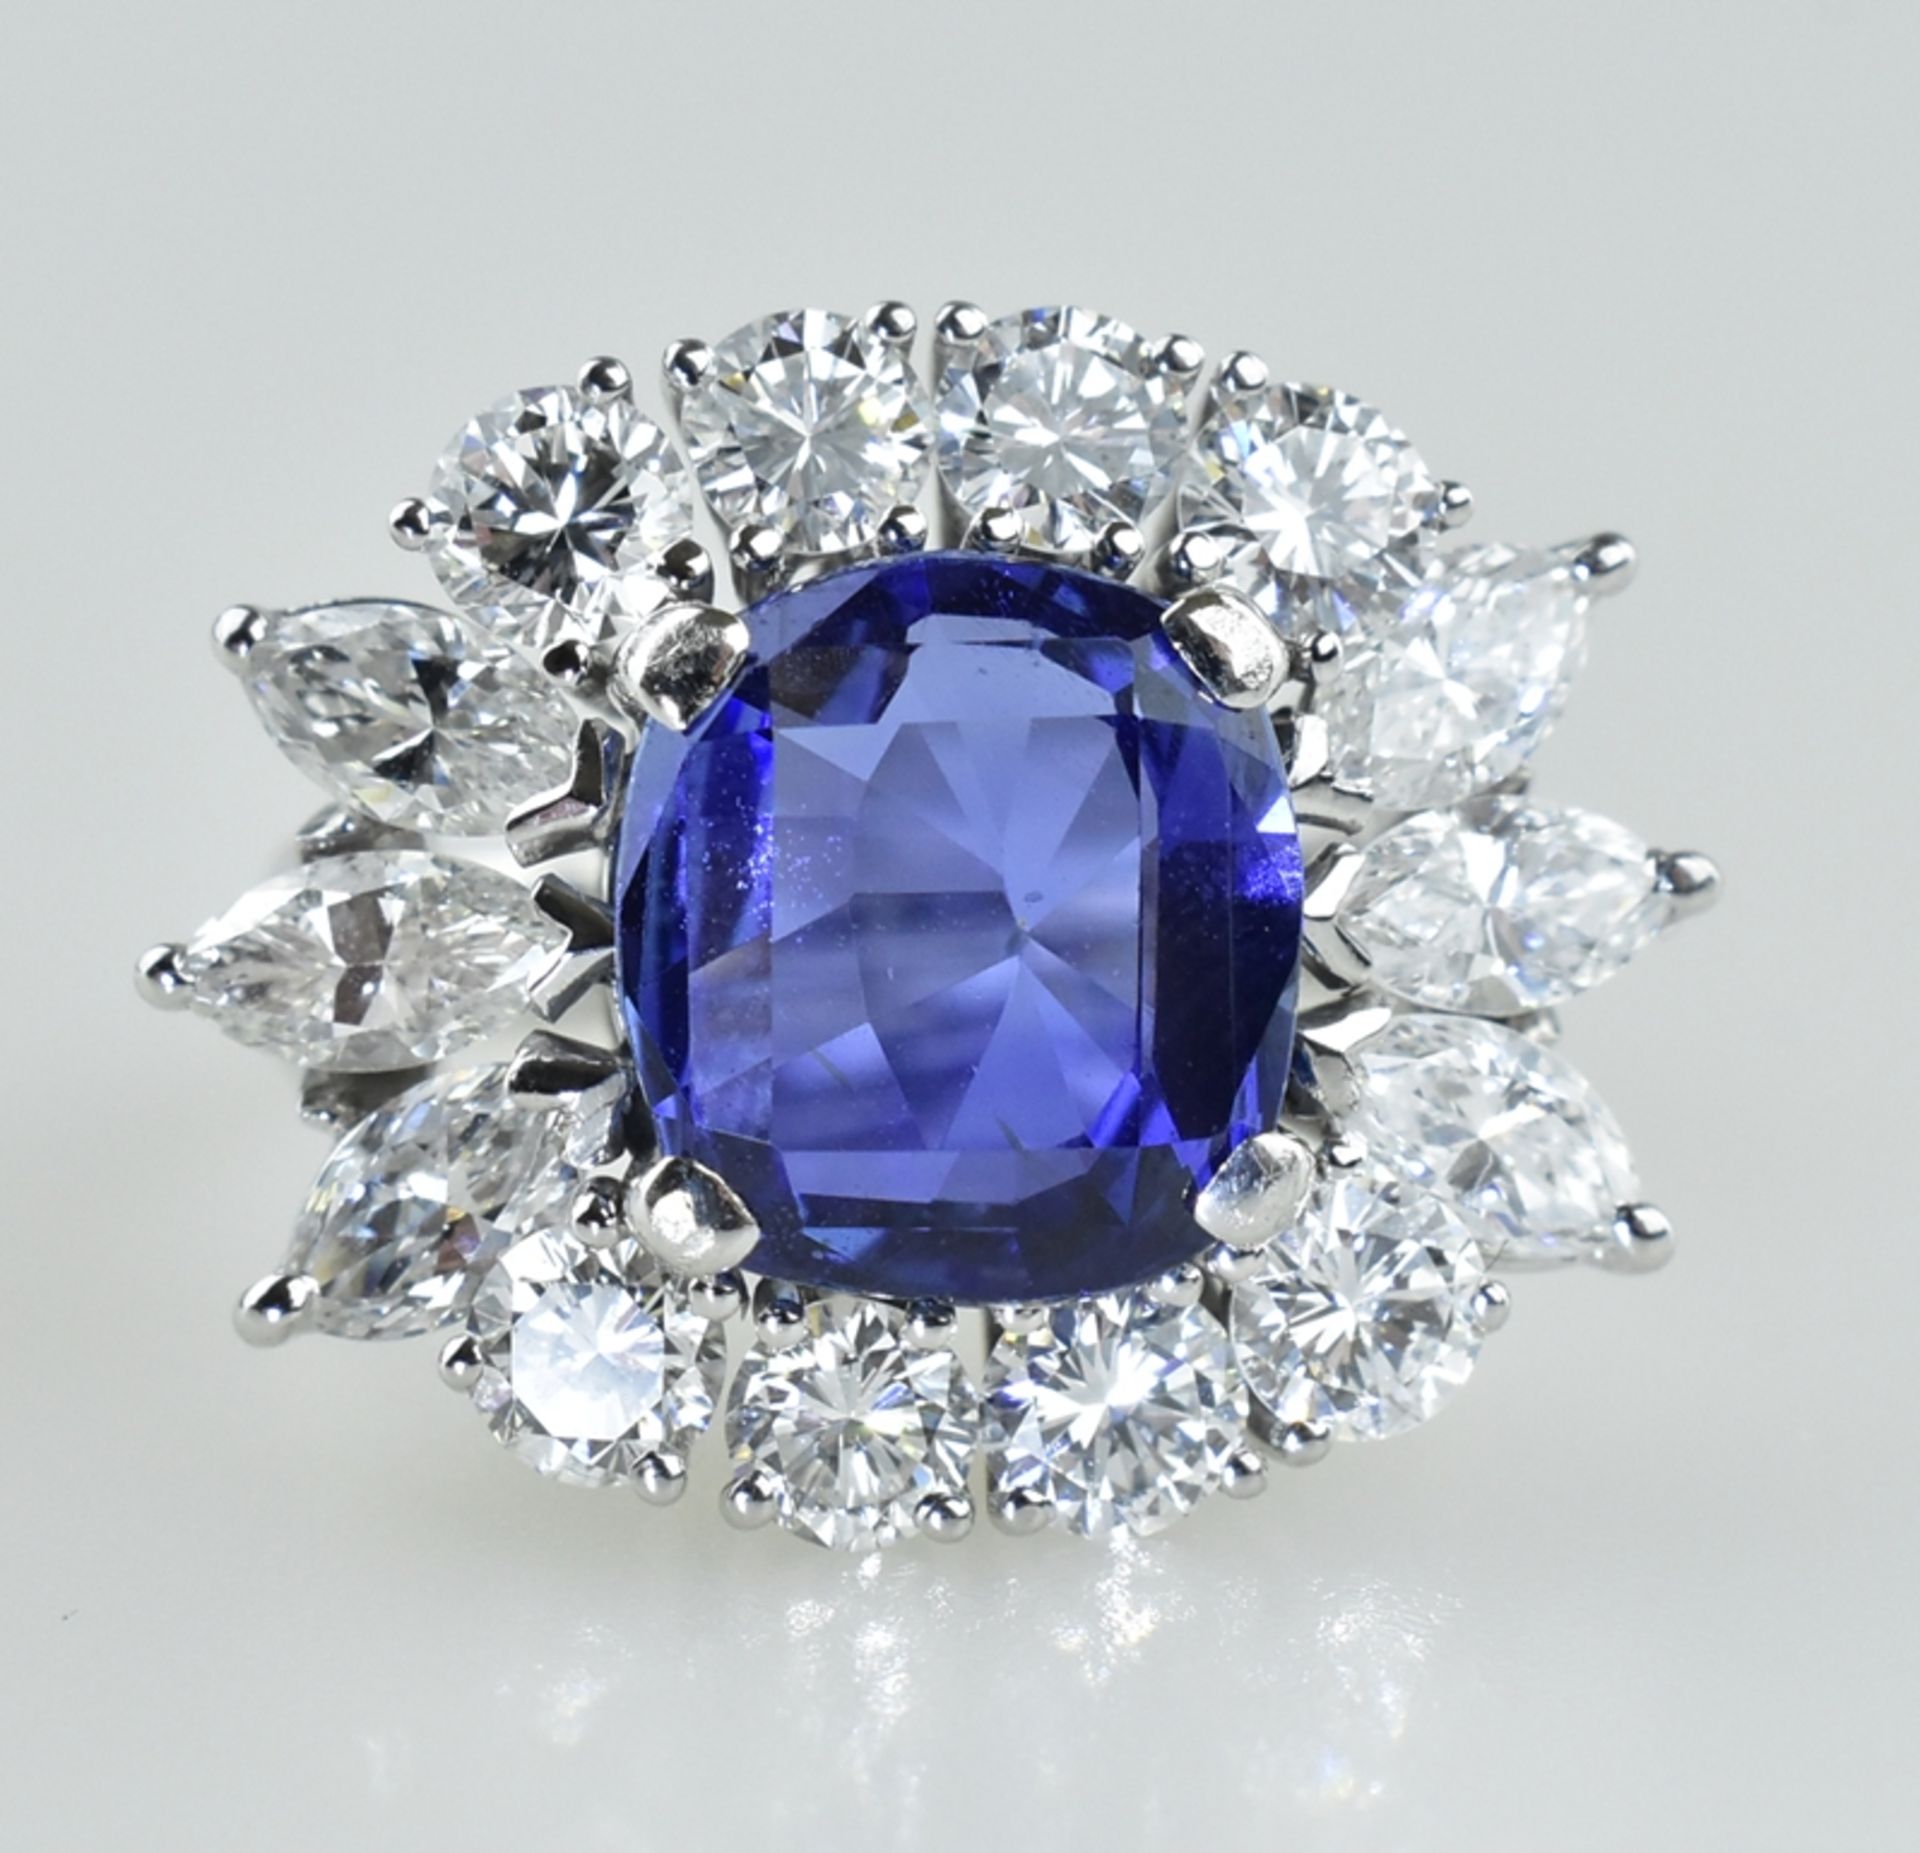 Außergewöhnlicher Ring mit Burma Saphir. Saphir von 5,94 ct. in leuchtendem Blau. Kissenschliff. Ed - Bild 3 aus 3